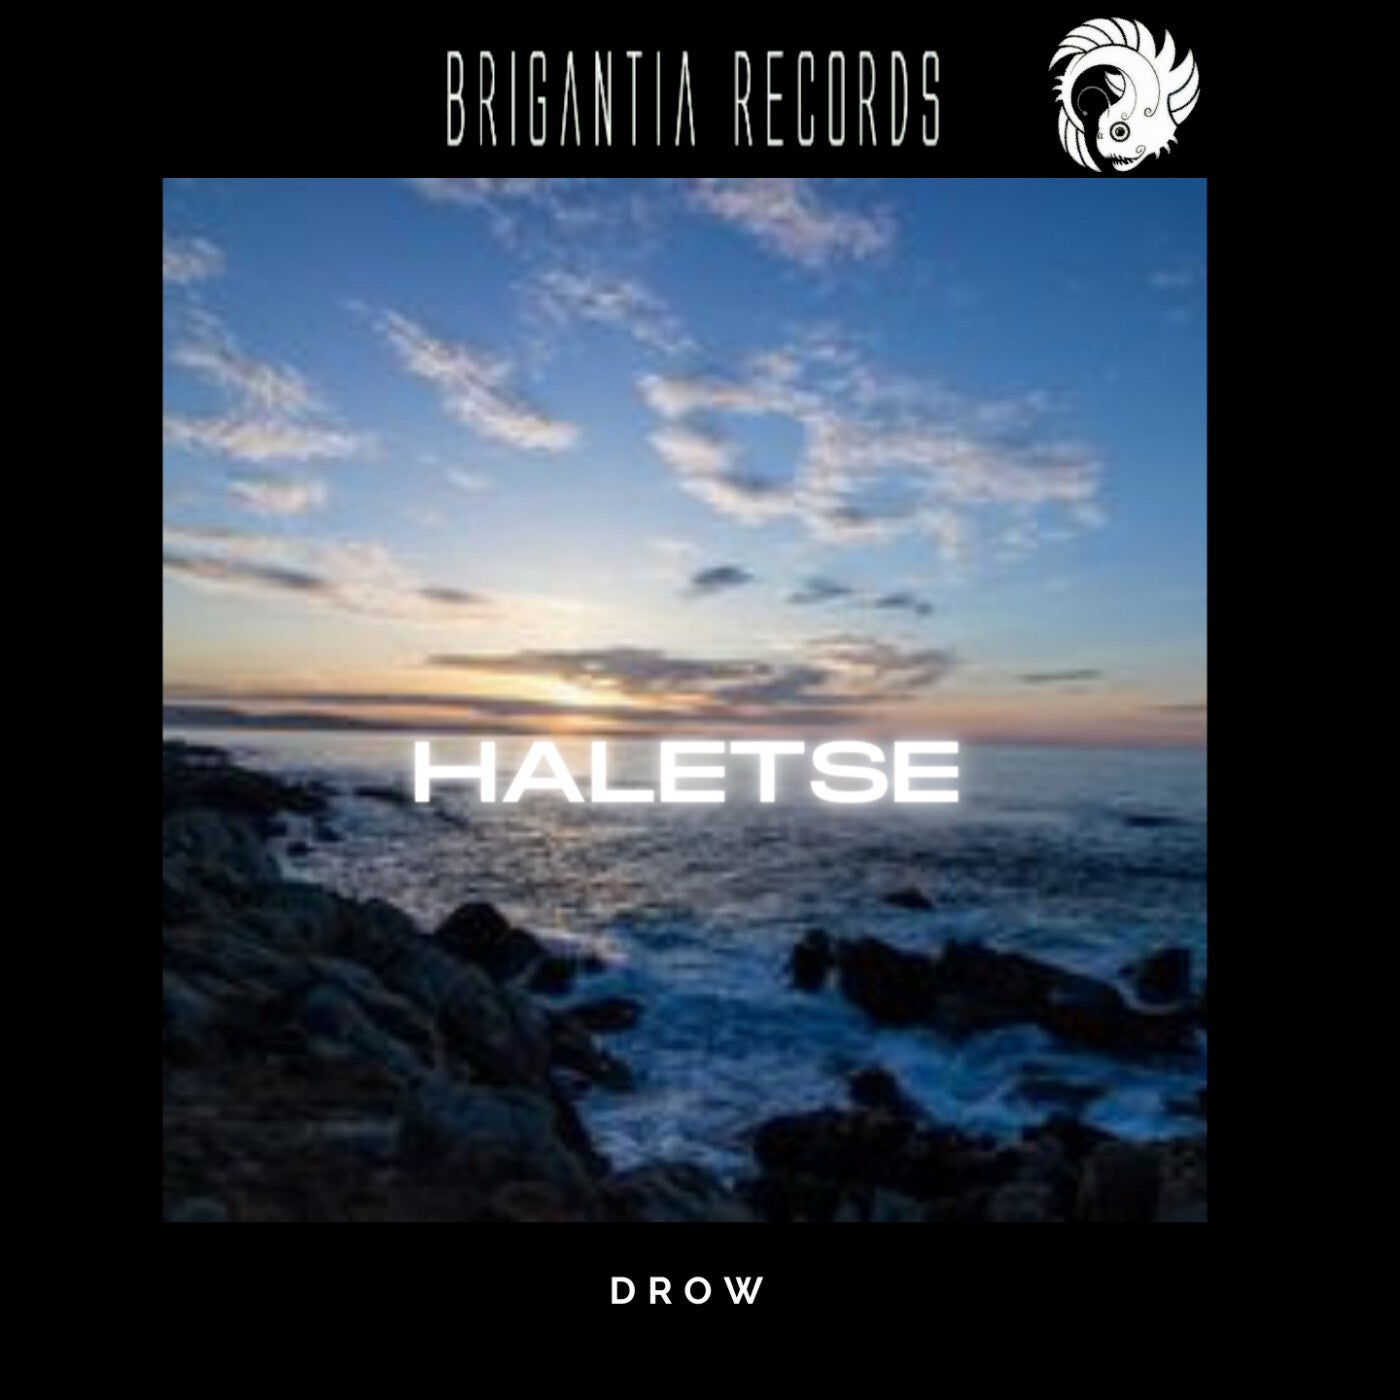 Drow - Haletse [BR0045]